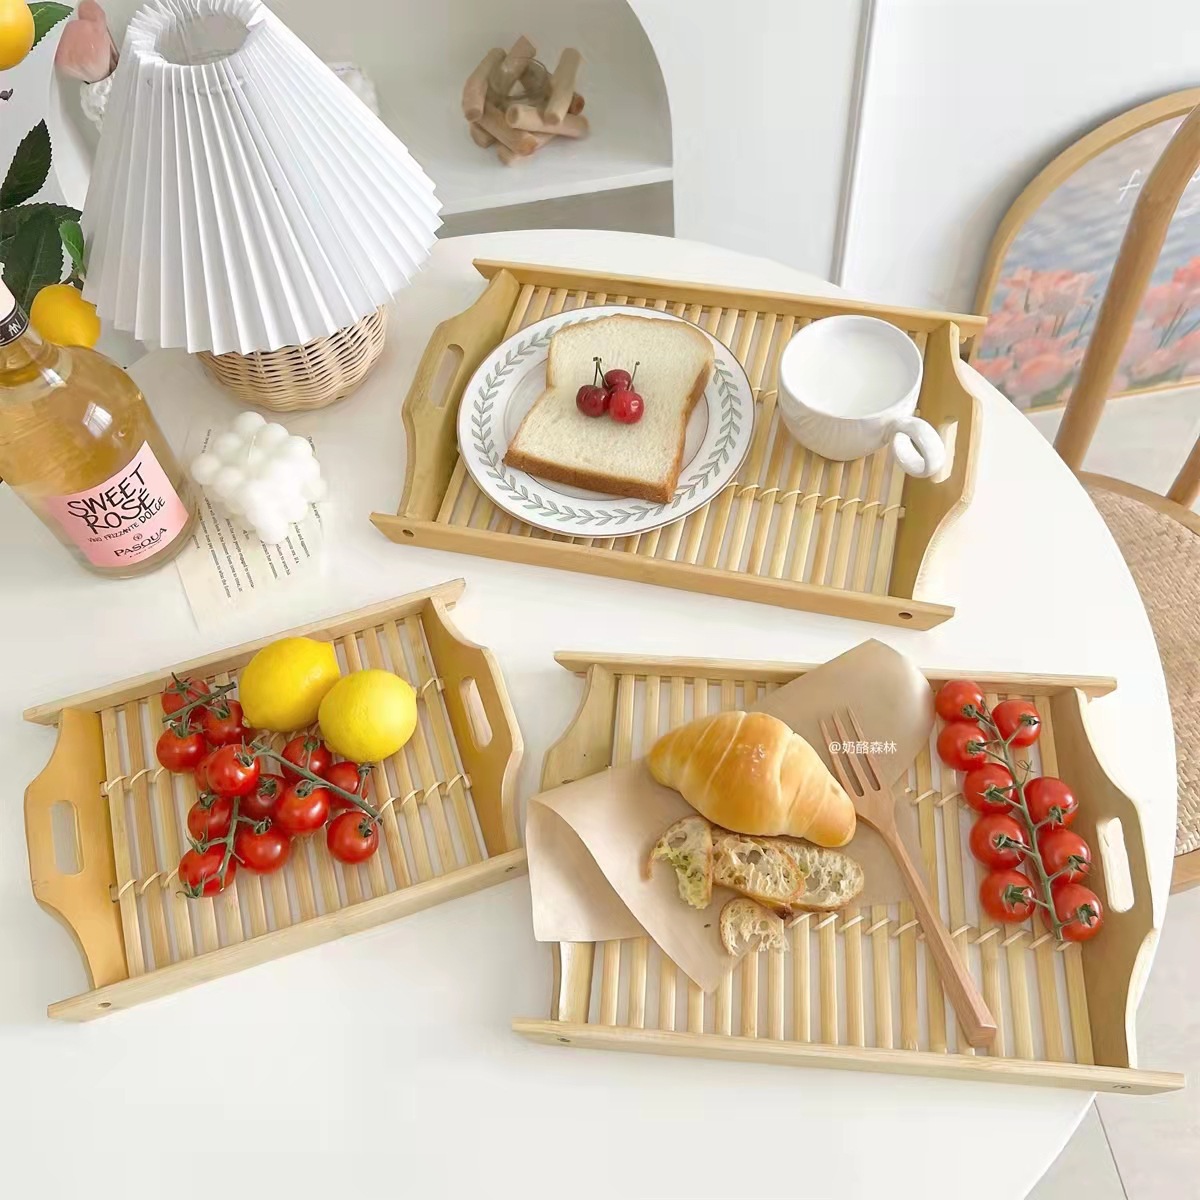 日式竹制托盘长方形竹木早餐托盘家用创意竹木水果托盘木质早餐盘